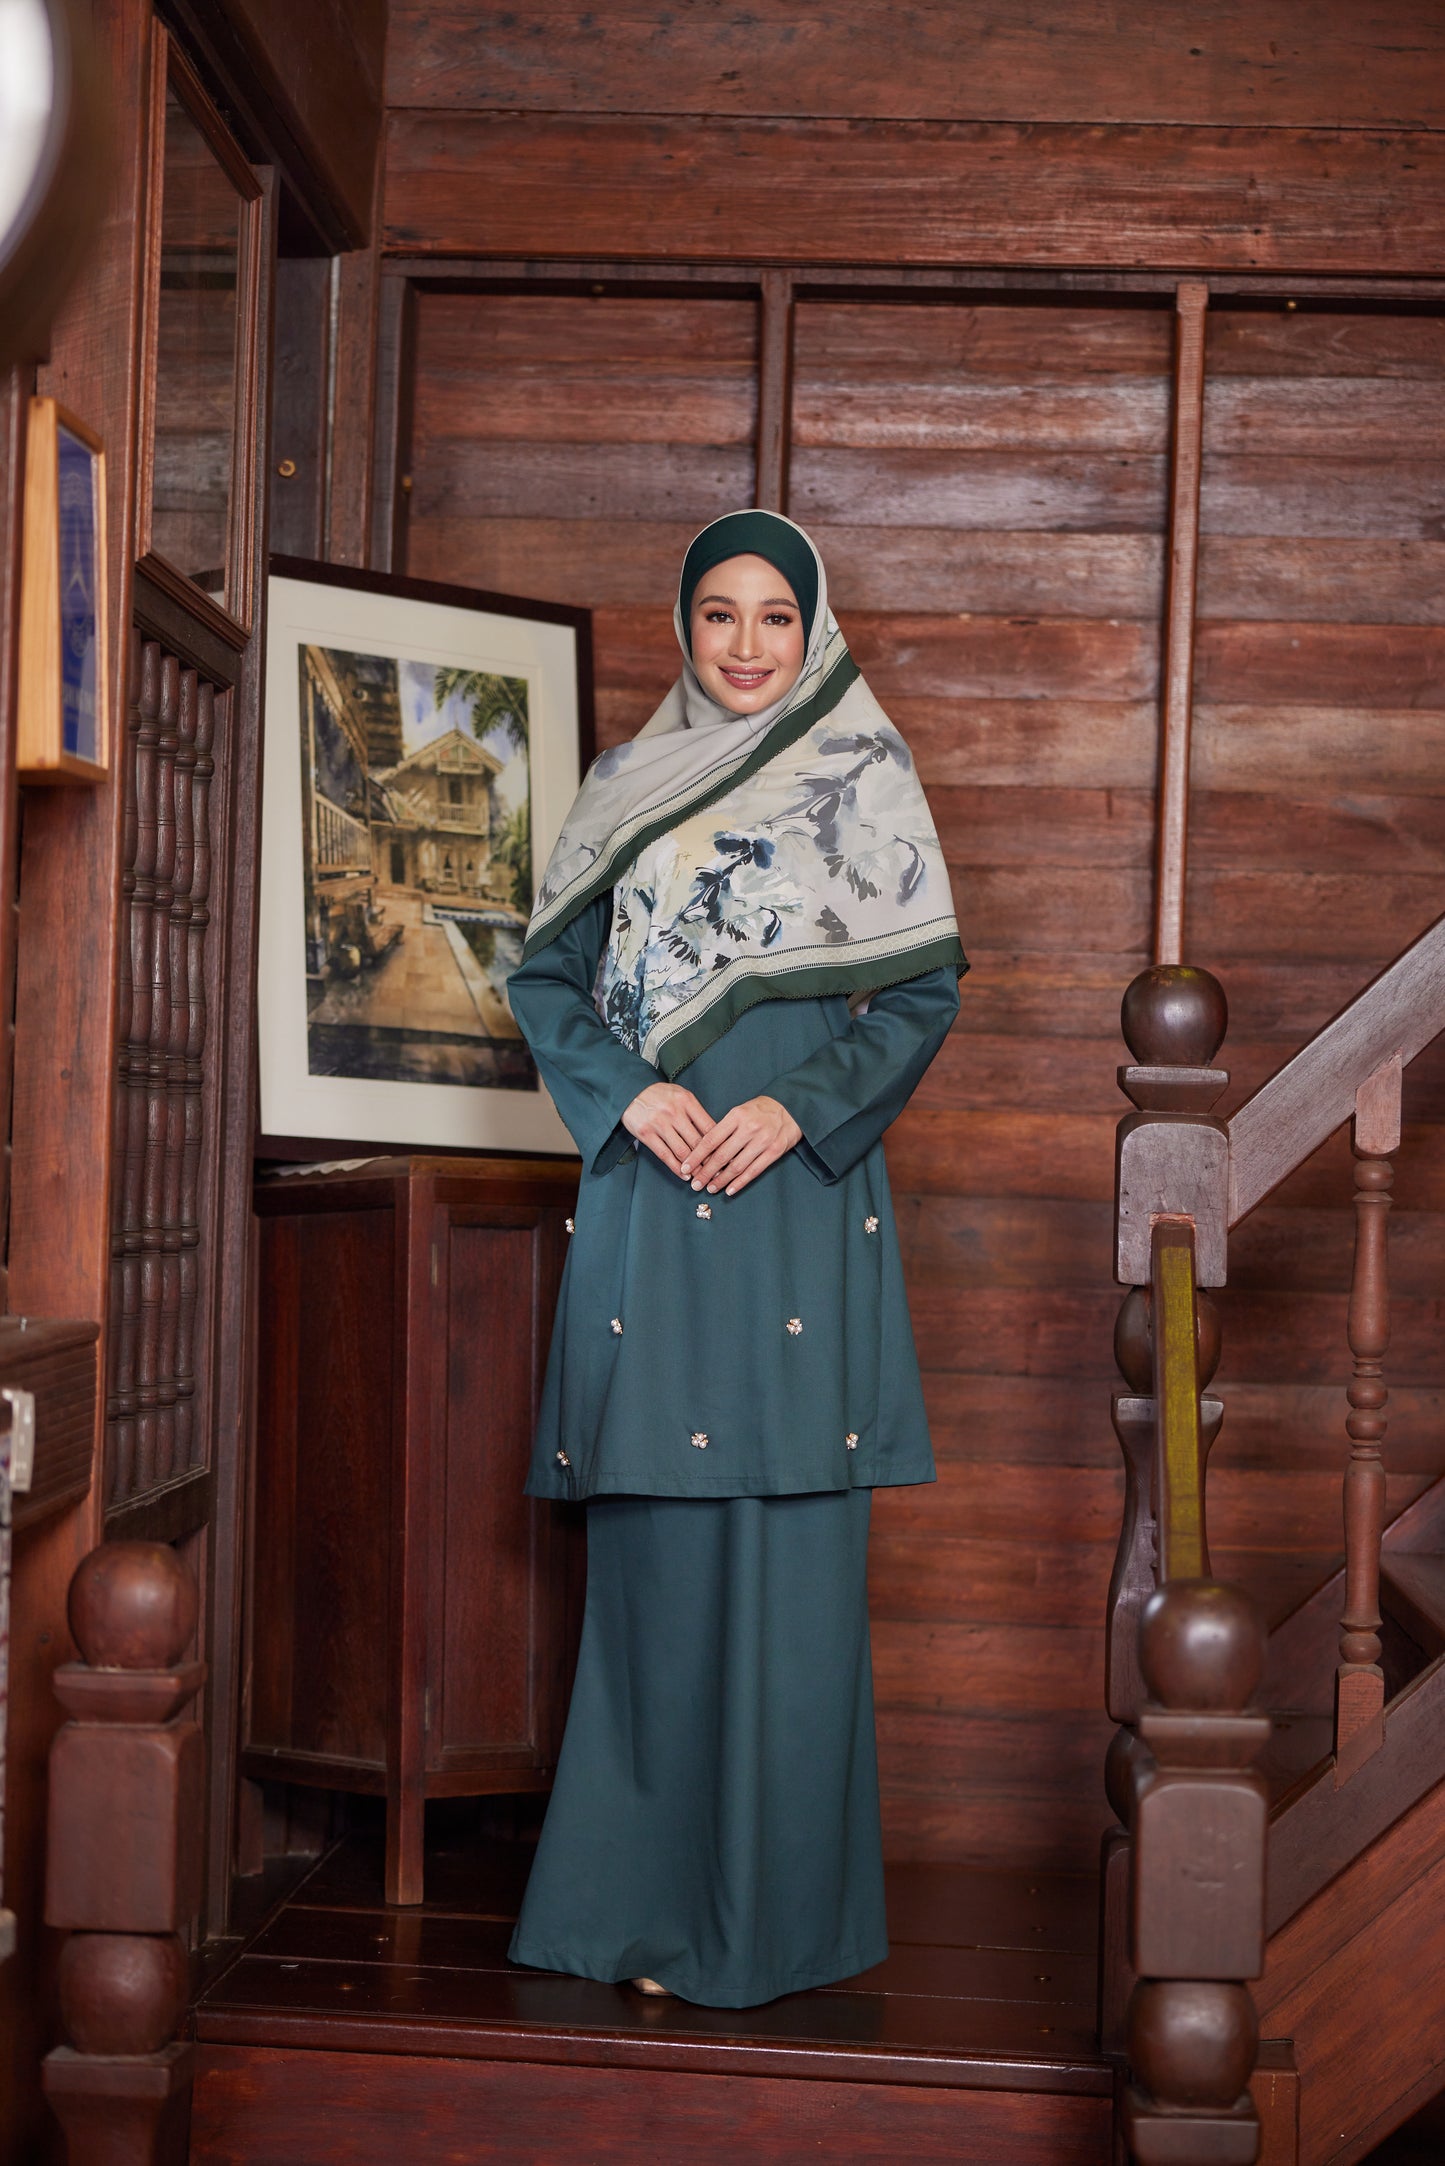 Baju Kurung Plain Gelora Raya - Serai Hijau (Emerald)